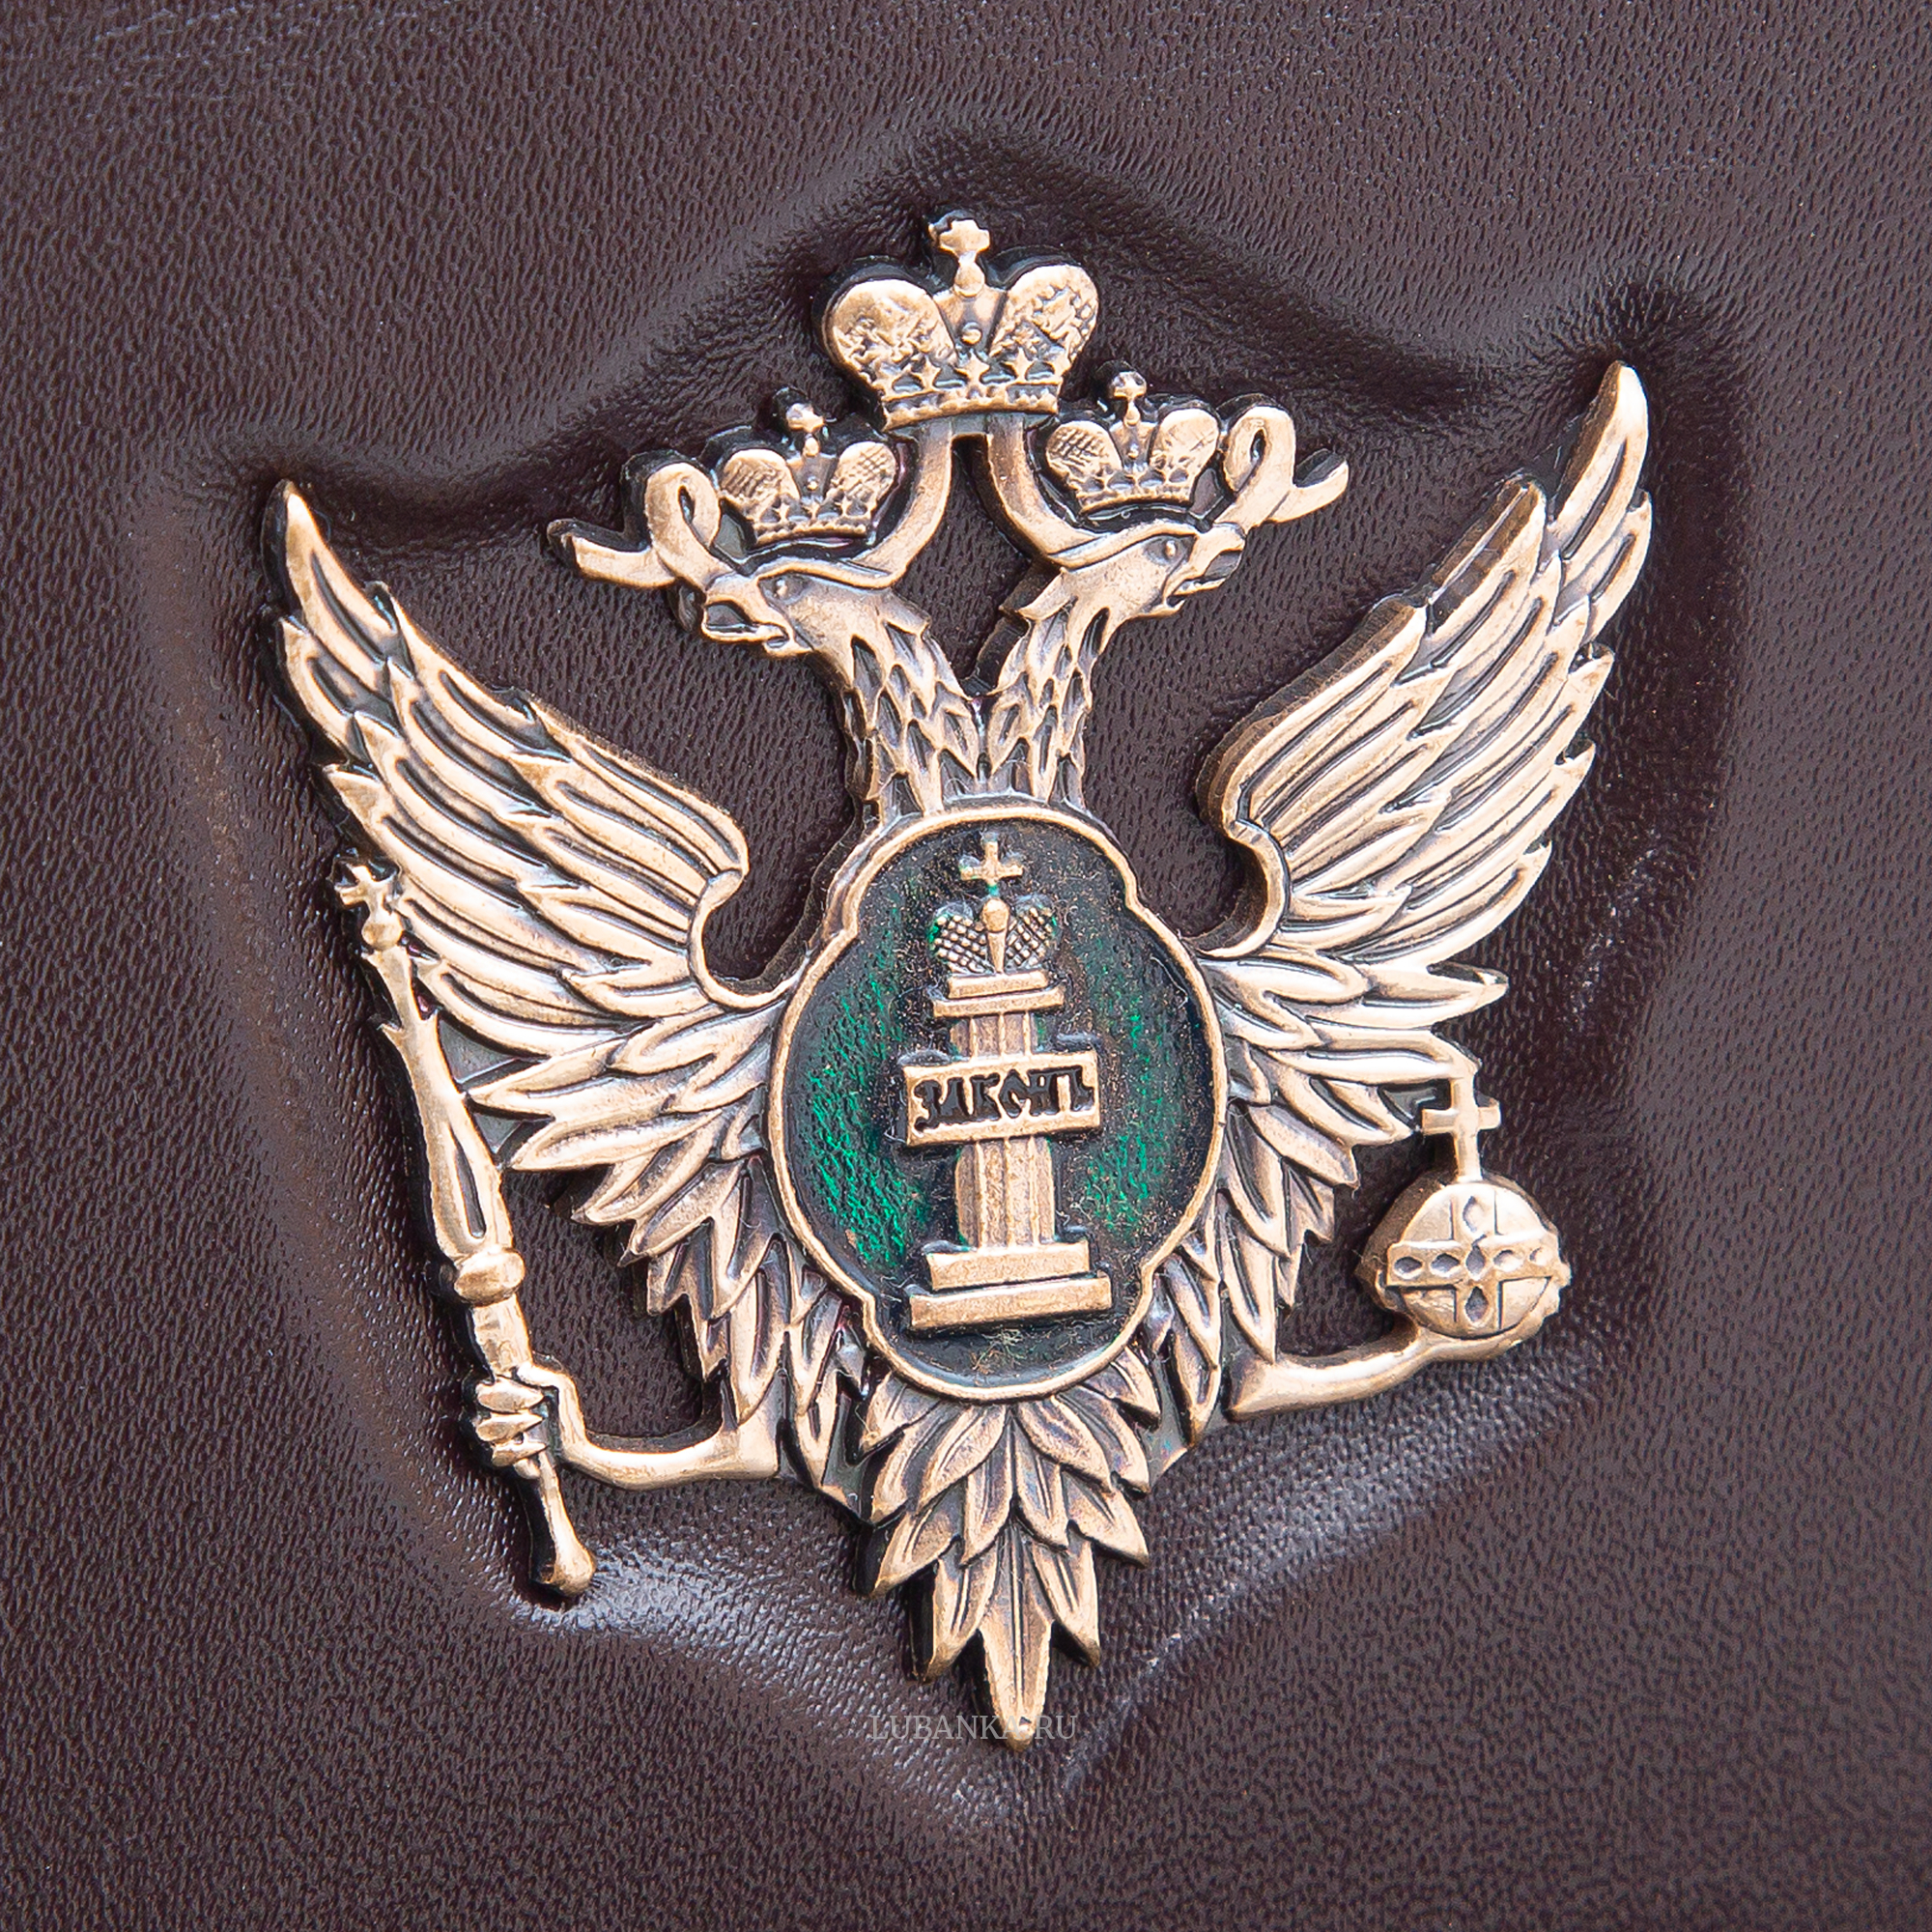 Обложка для автодокументов и удостоверения ФСИН с жетоном бордовая